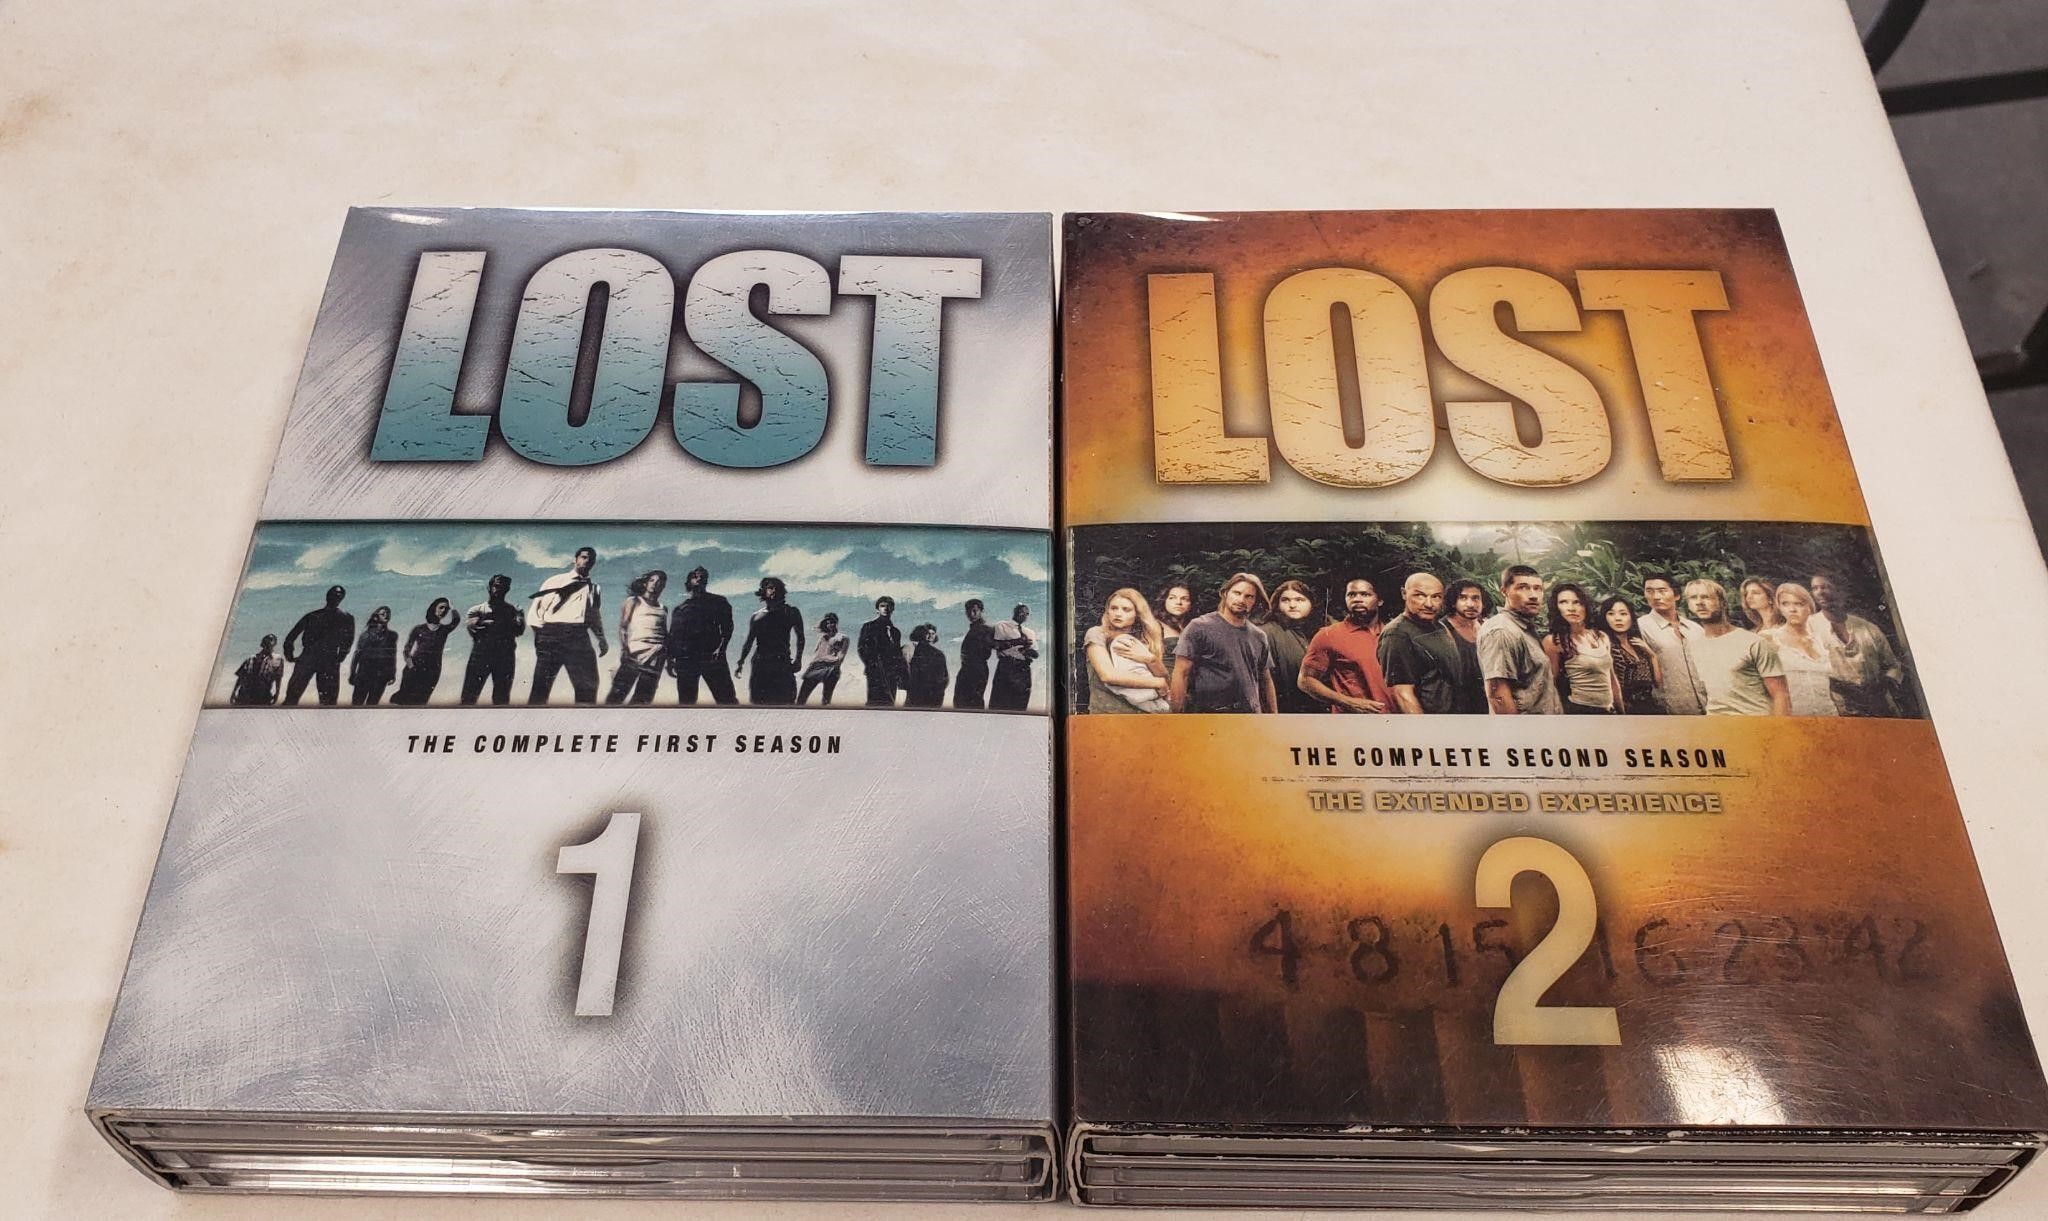 2 Seasons of Lost on DVD